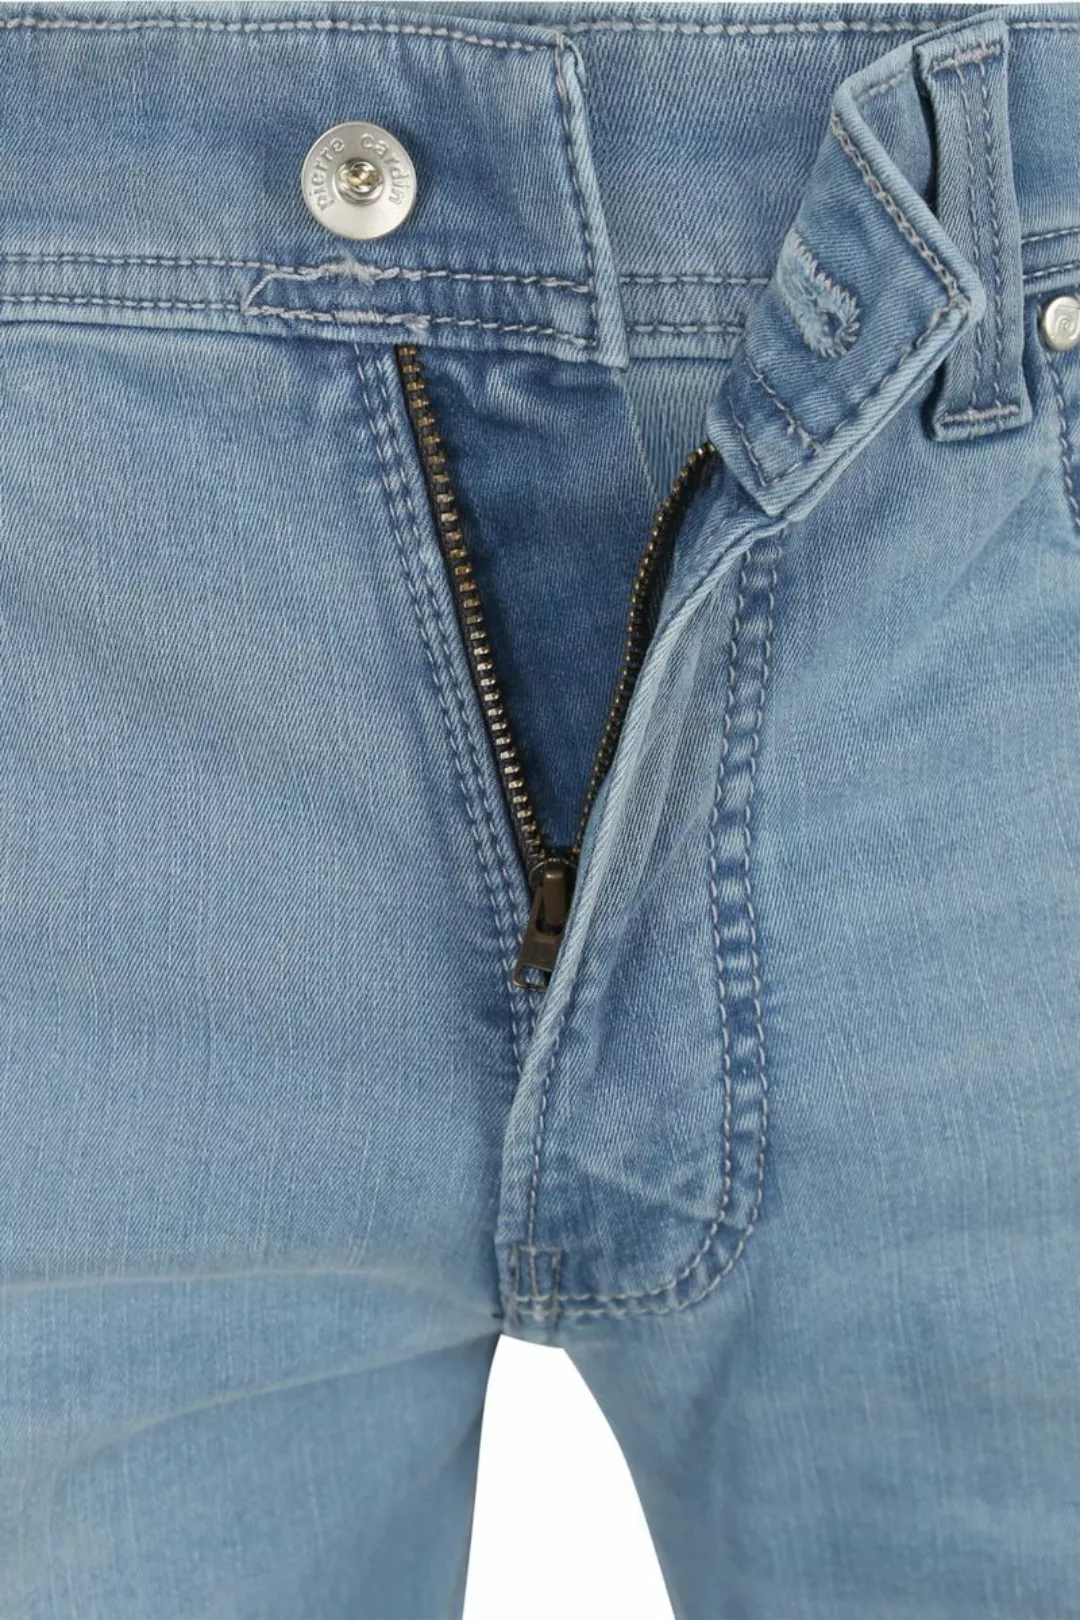 Pierre Cardin Jeans Lyon Tapered Future Flex Hellblau  - Größe W 31 - L 32 günstig online kaufen